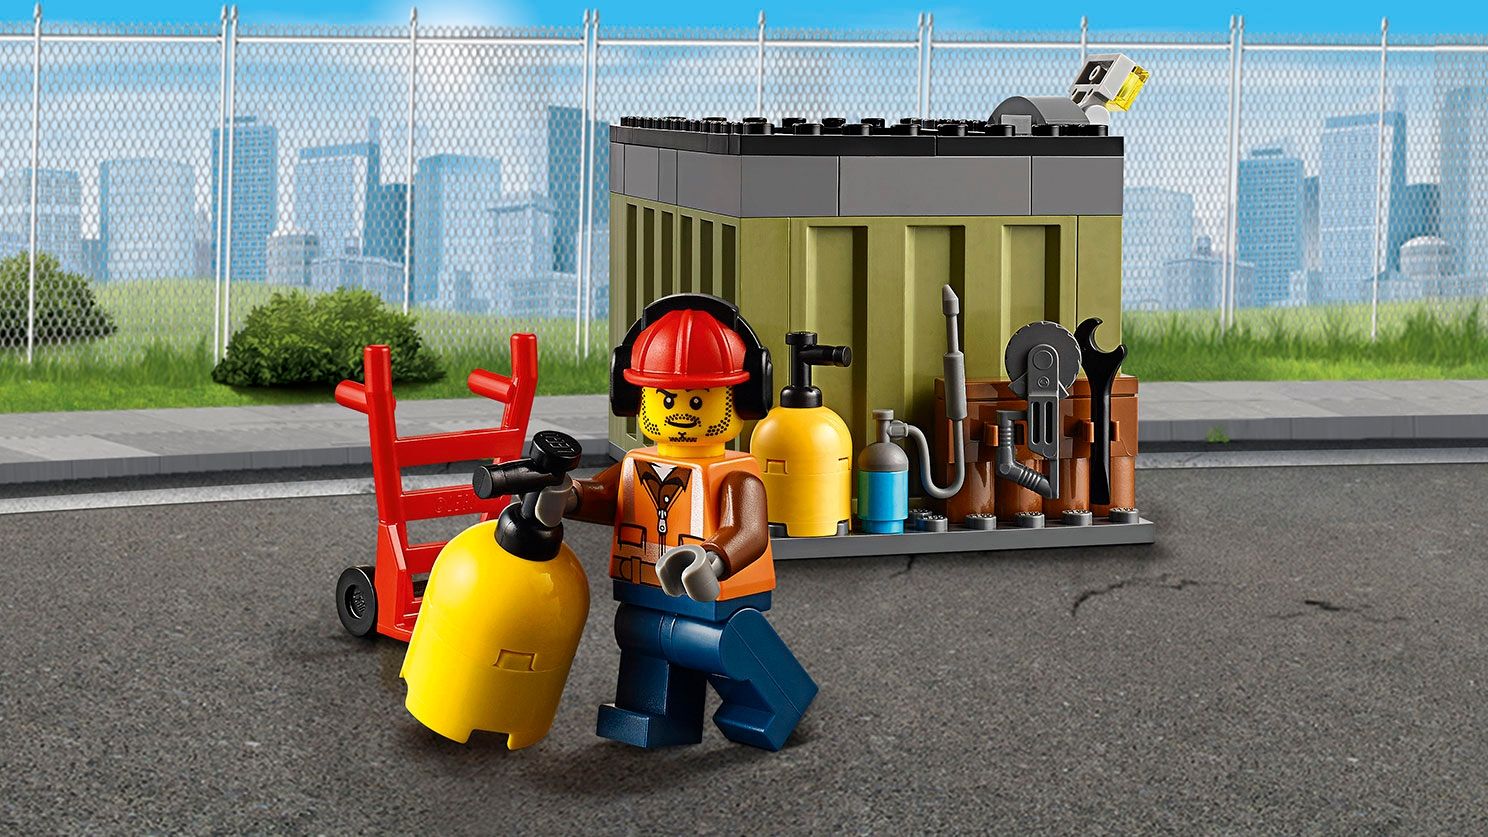 LEGO City 60108 Feuerwehr-Löscheinheit LEGO_60108_web_SEC06_1488.jpg